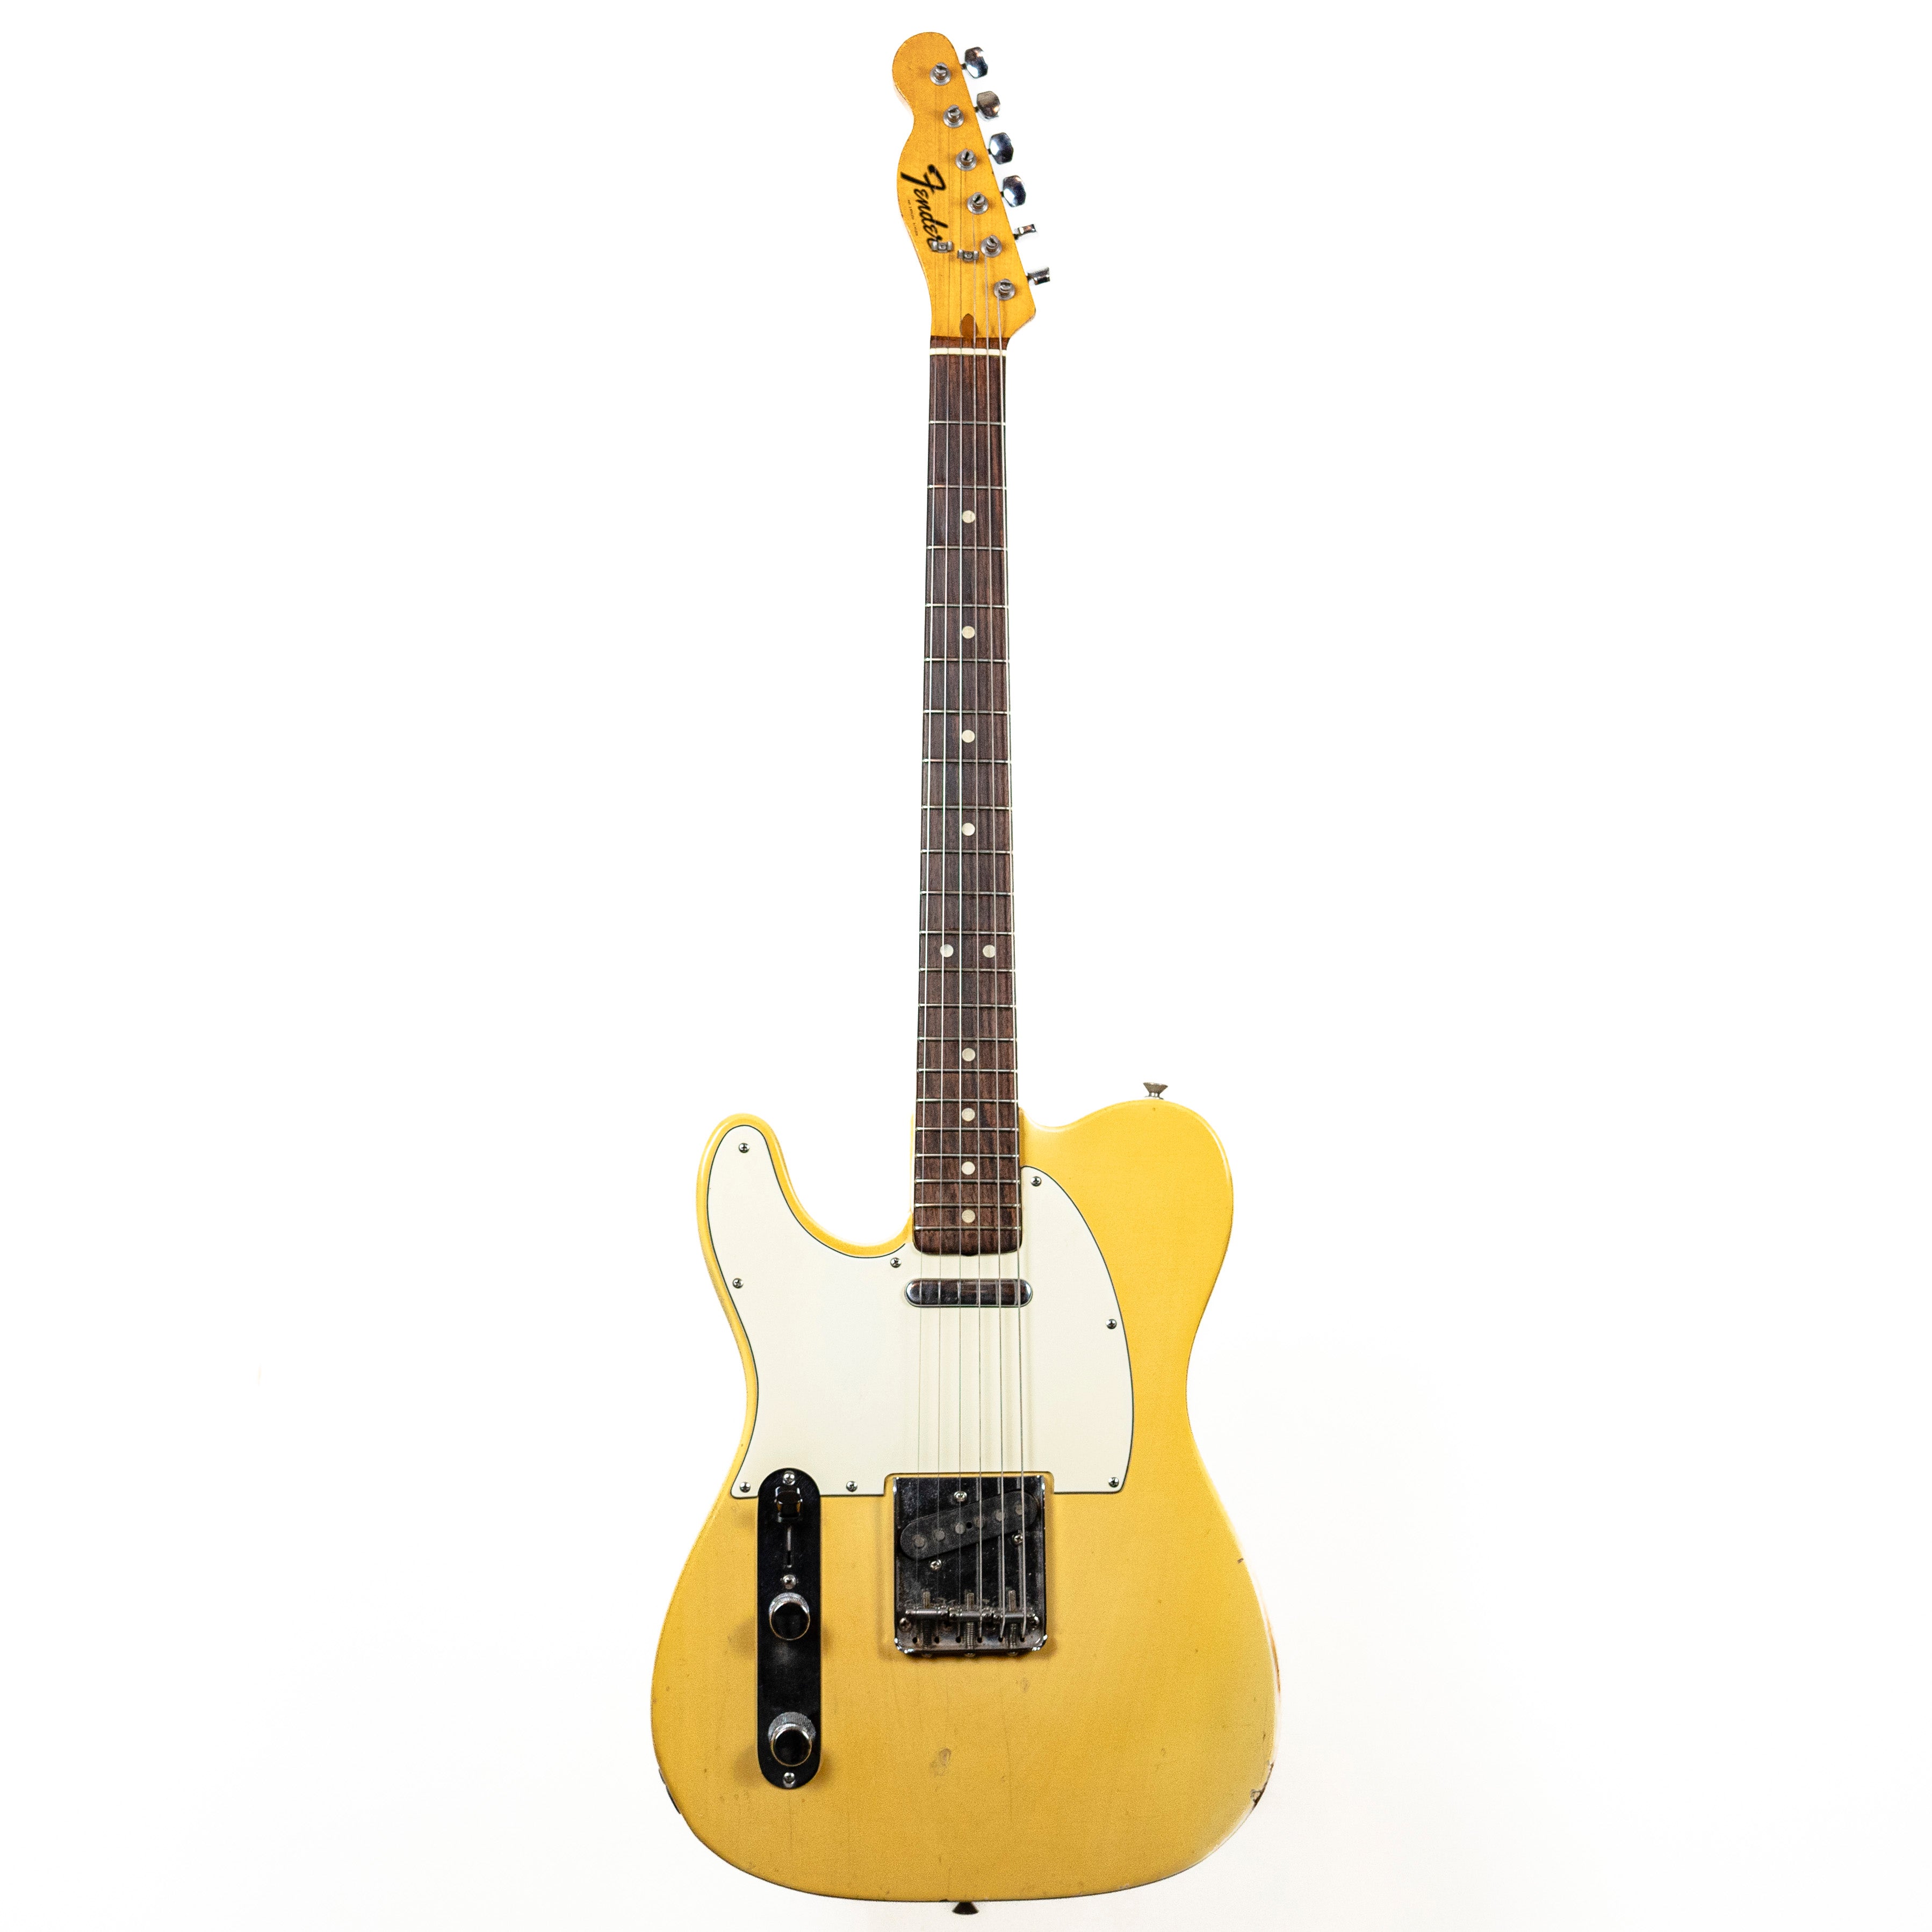 Fender 1973 Telecaster Lefty Blonde — Rudy's Music Soho